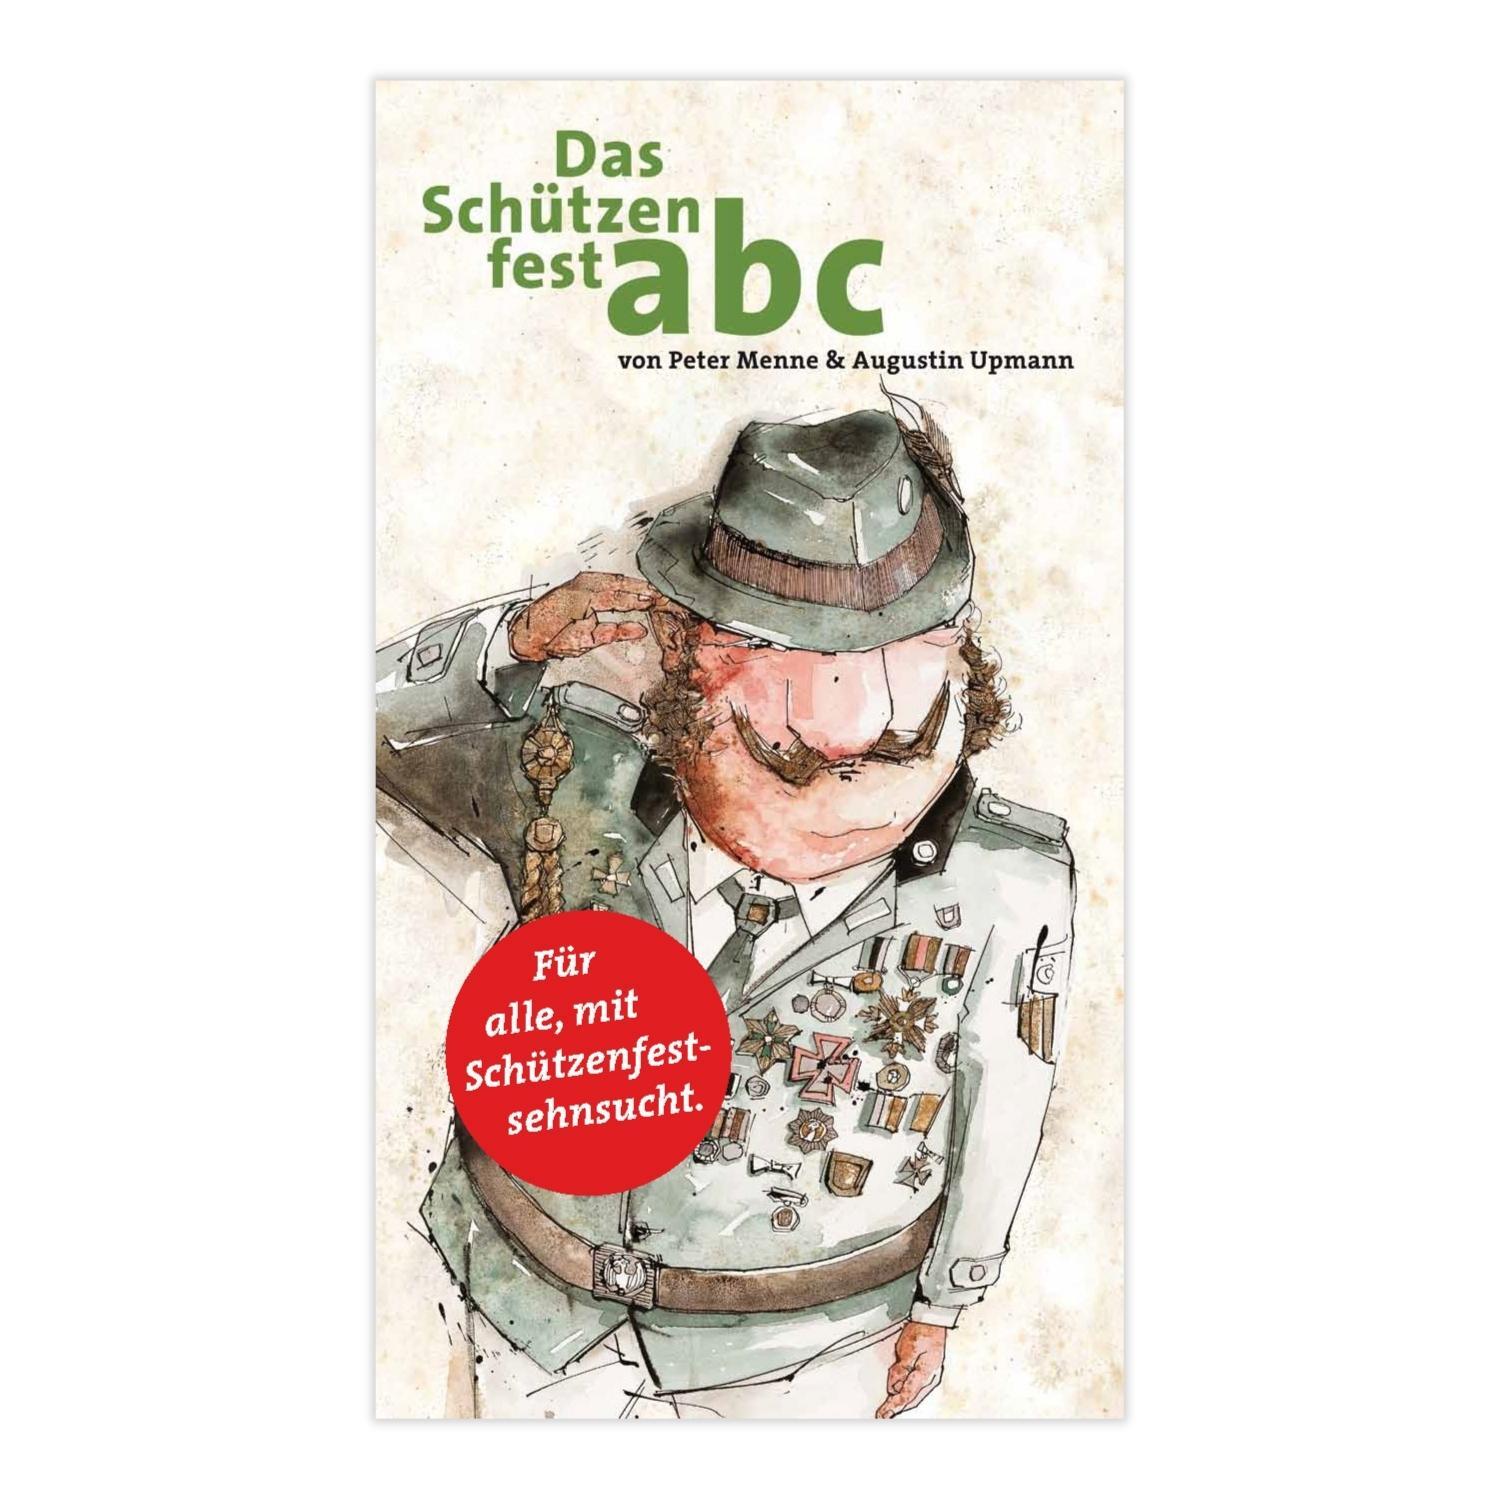 Das Schützenfest abc (Peter Menne/Augustin Upmann)